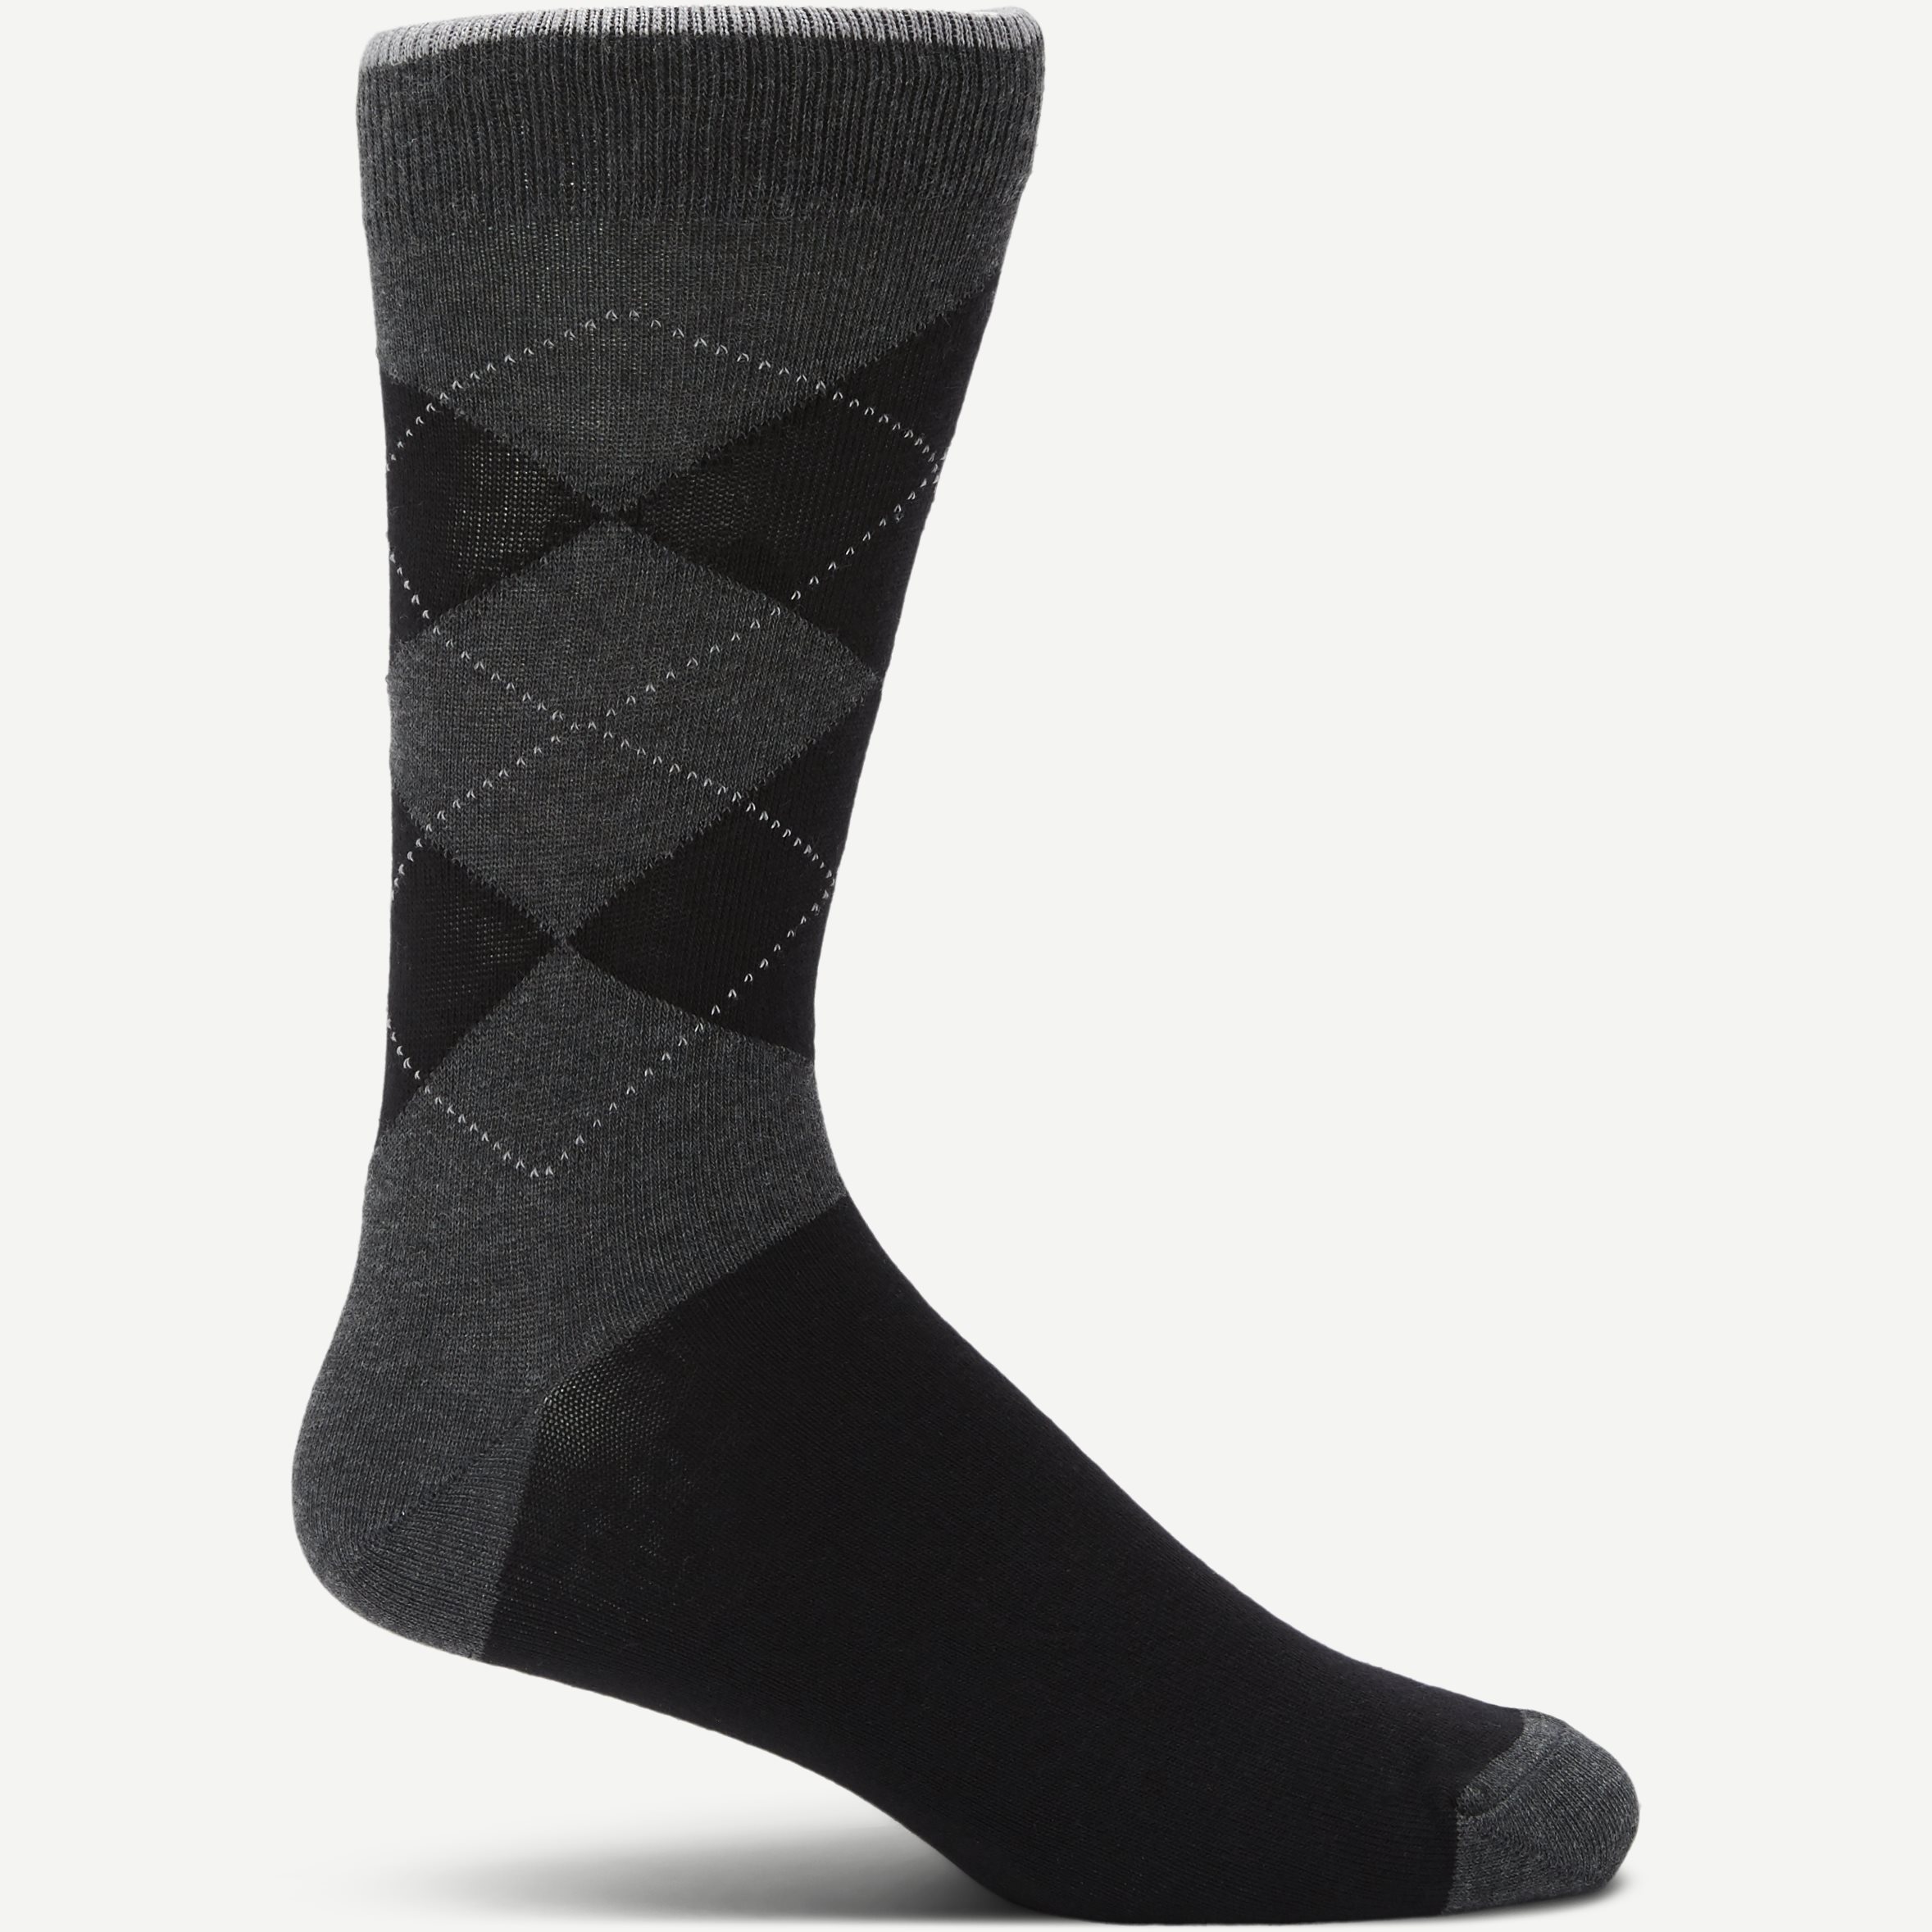 William Soccer - Socks - Grey